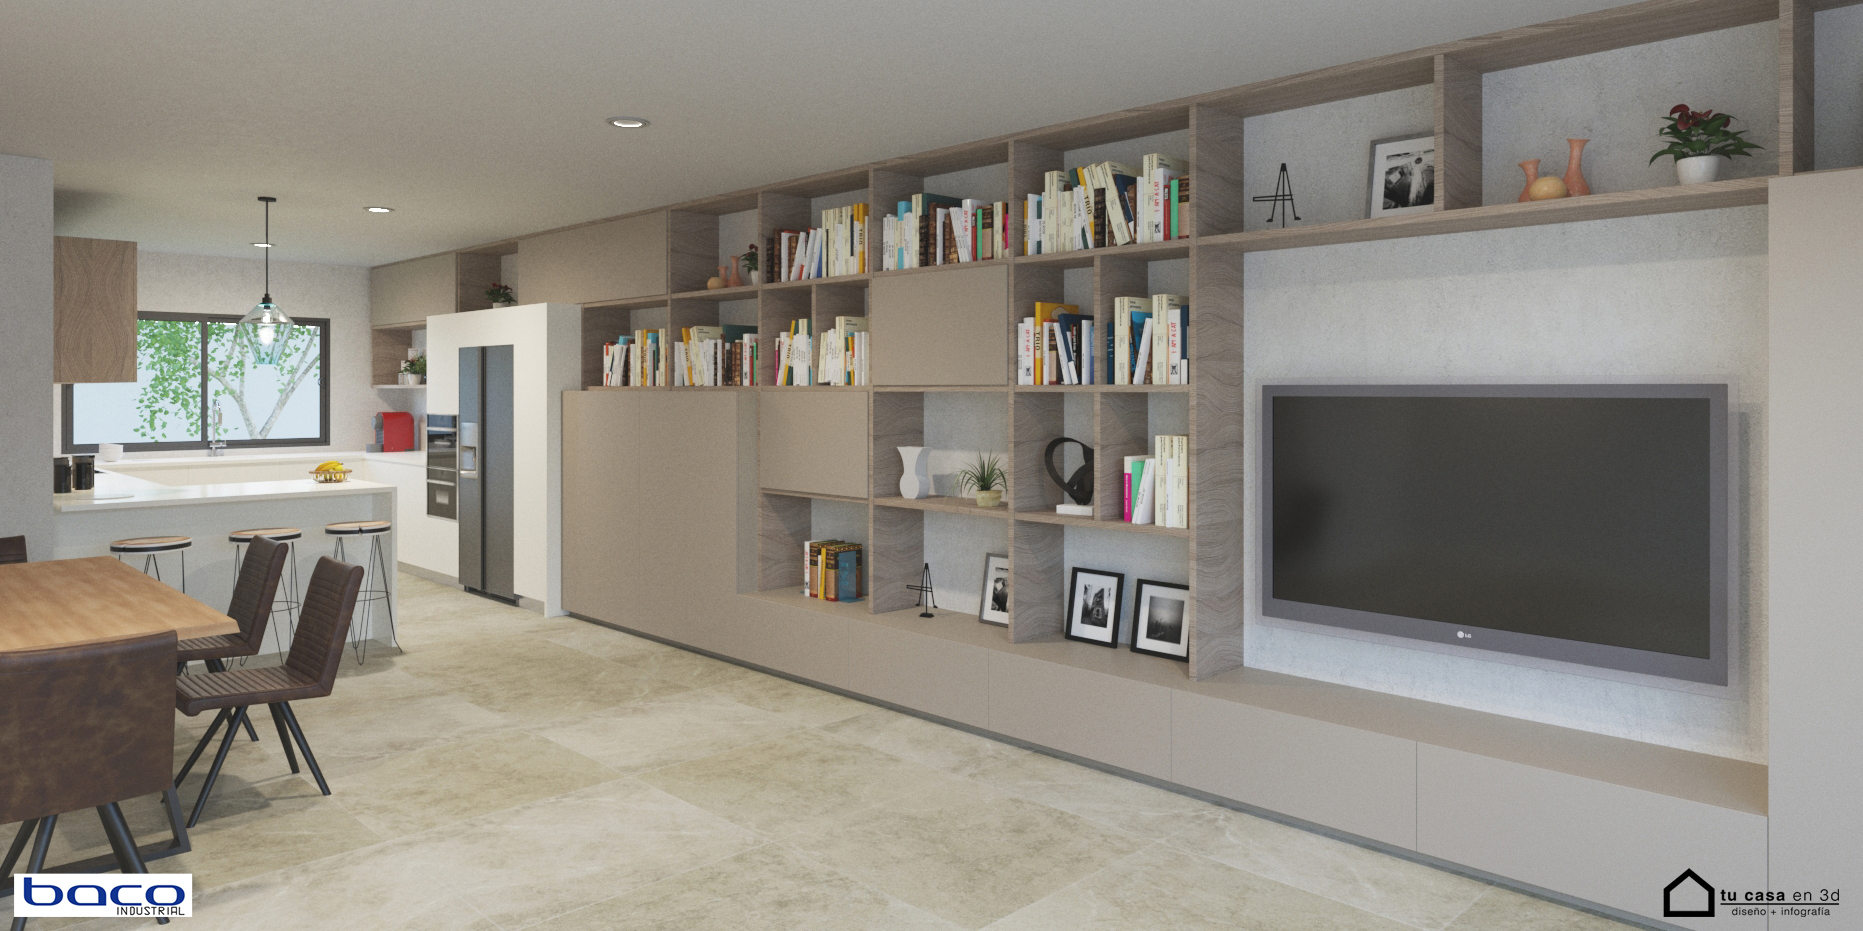 Demonio Electrizar Desagradable Cocina y Mueble salón integrado - Tu Casa en 3D